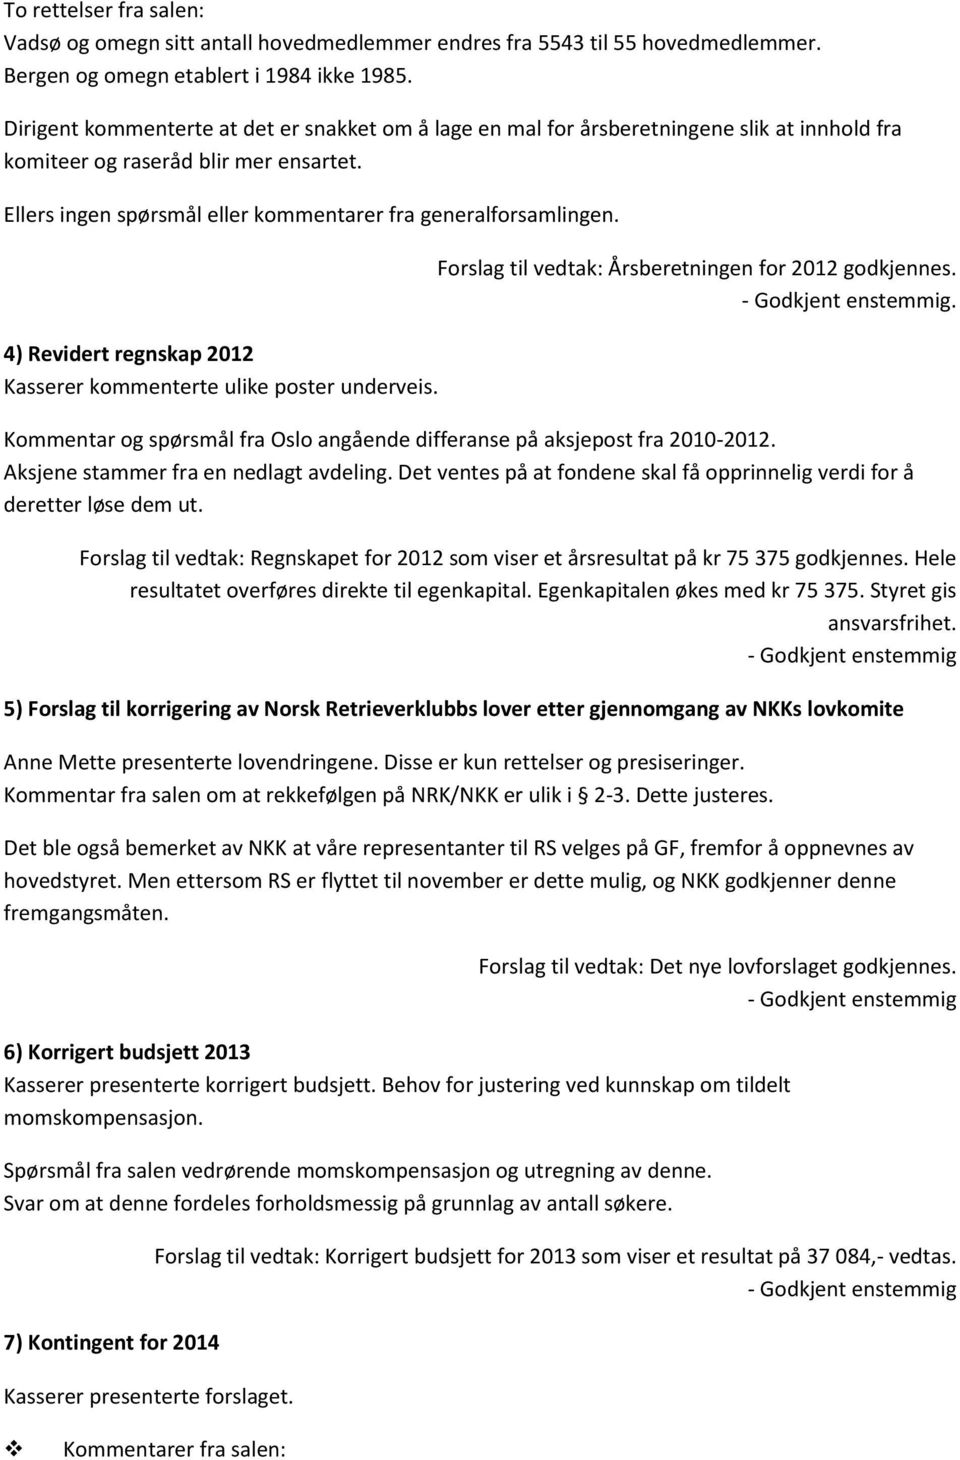 4) Revidert regnskap 2012 Kasserer kommenterte ulike poster underveis. Forslag til vedtak: Årsberetningen for 2012 godkjennes.